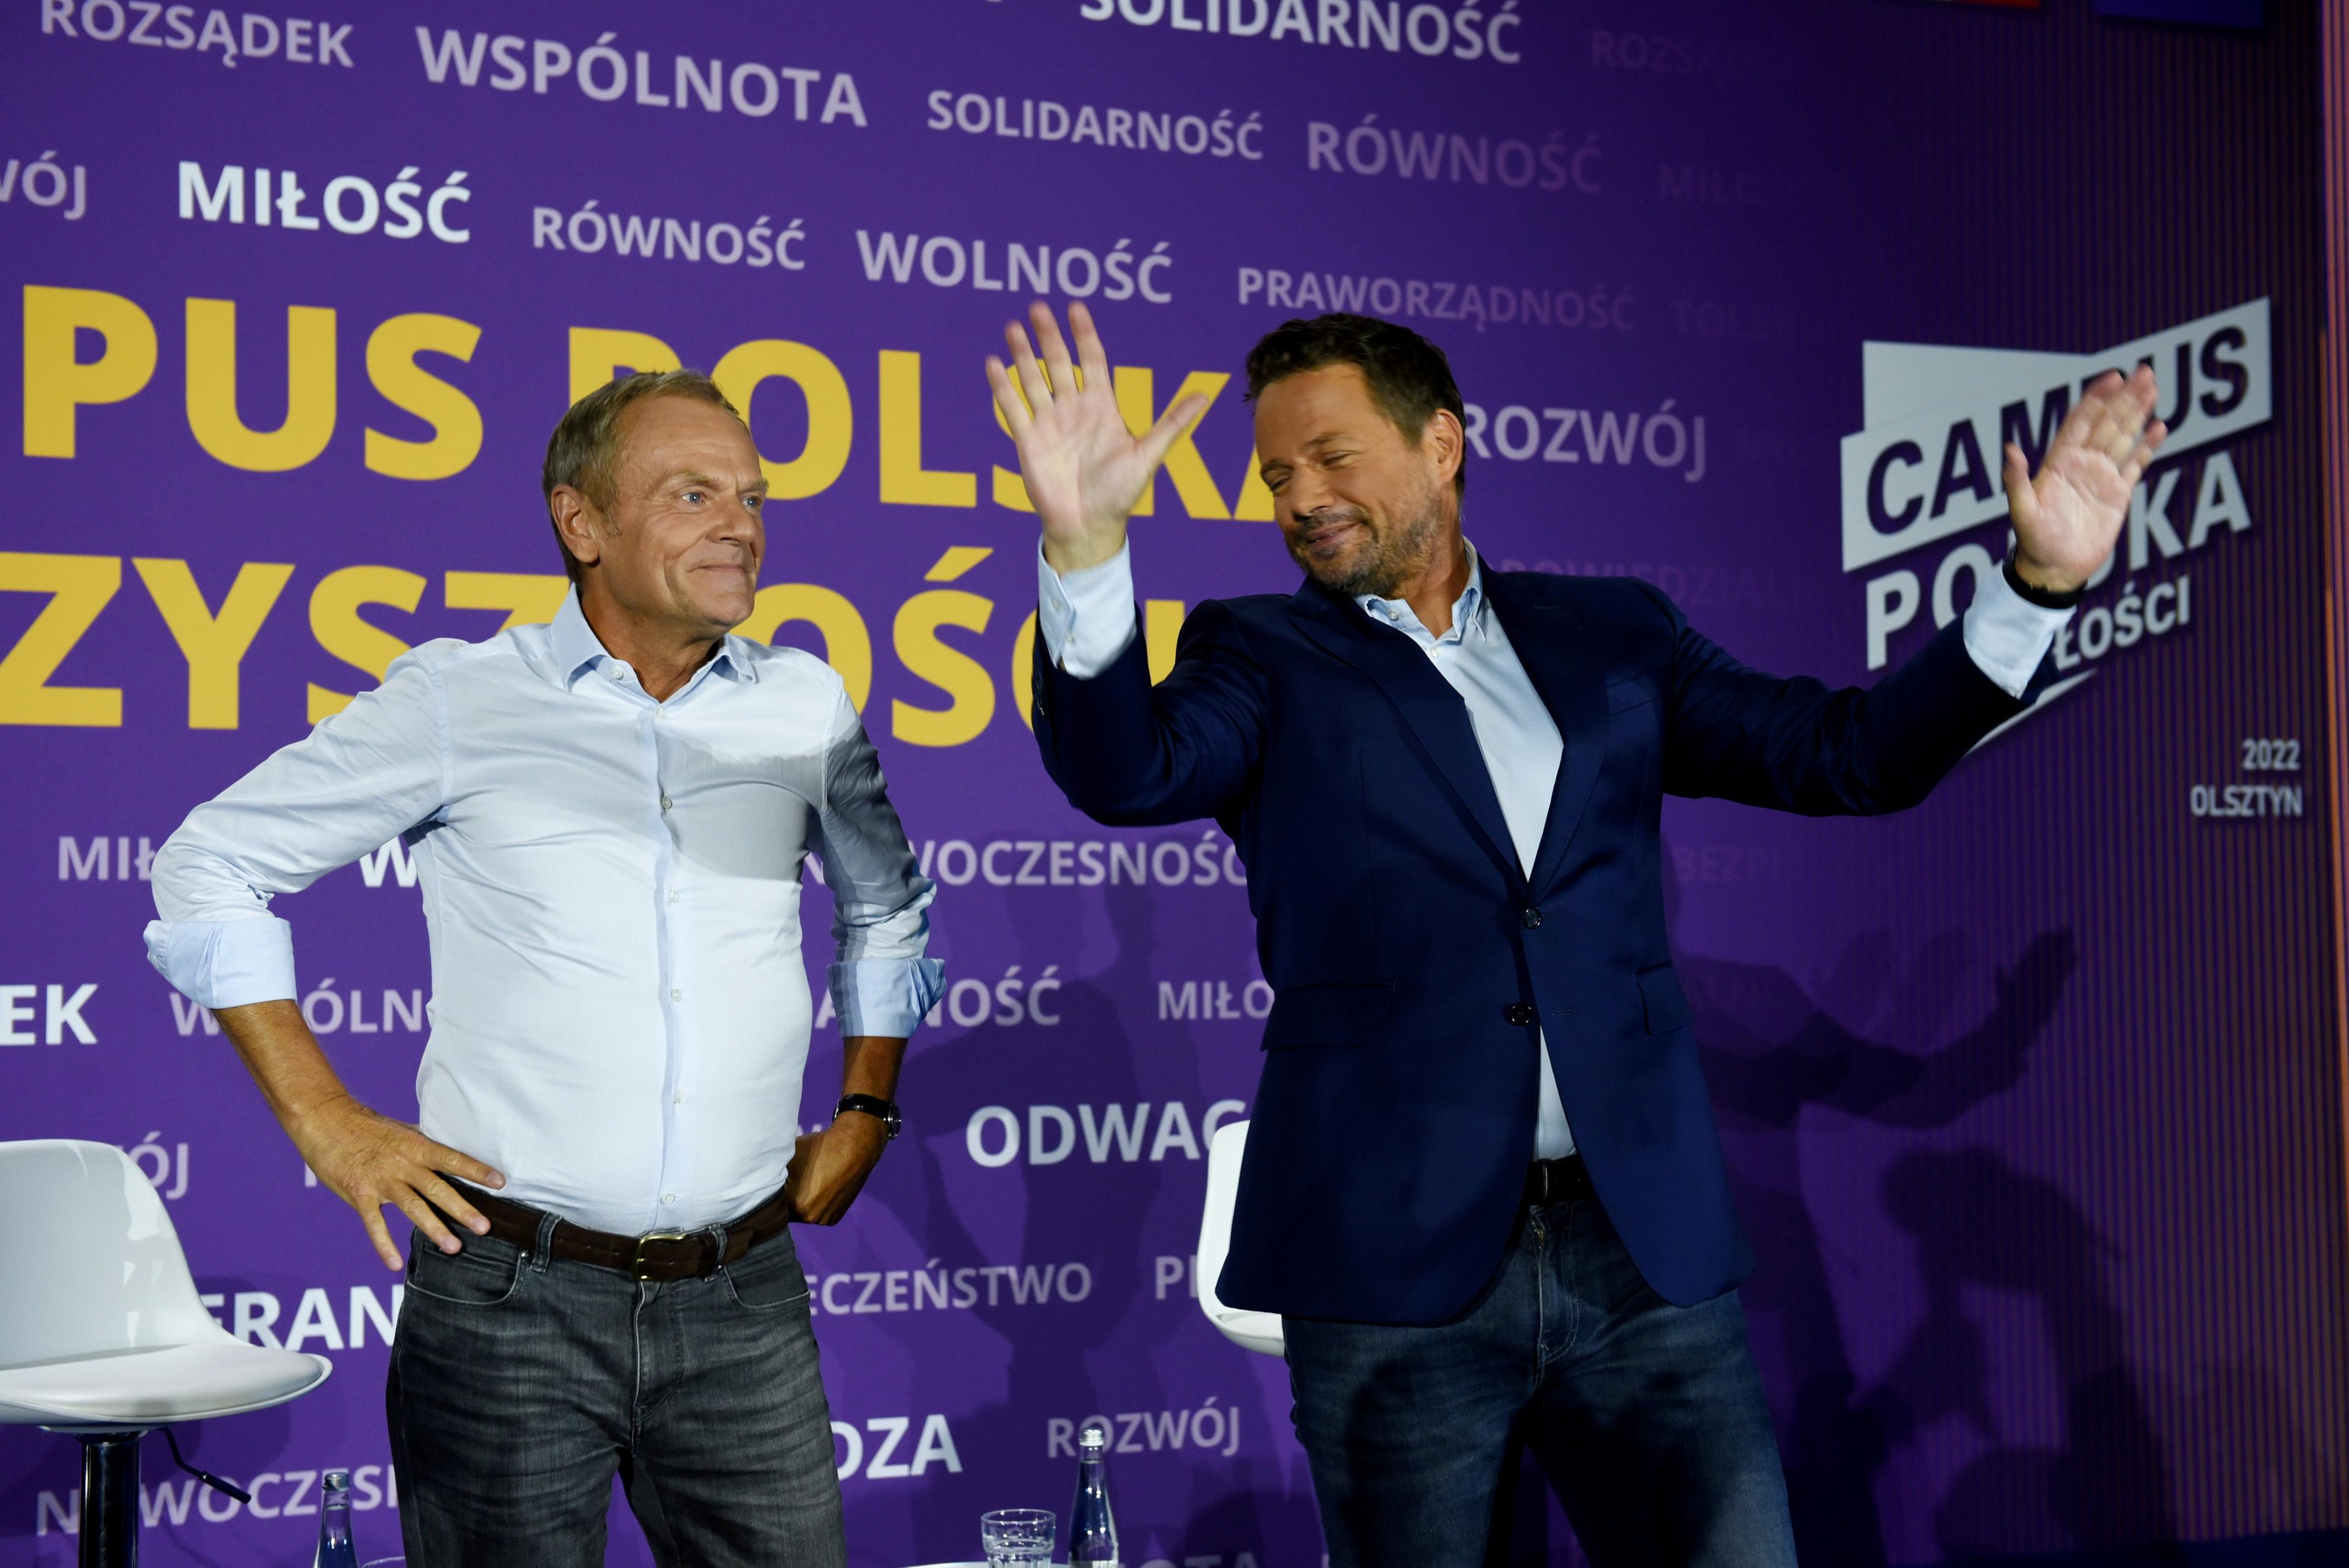 Donald Tusk w białej koszuli, i Rafał Trzaskowski w białej koszuli i ciemnej marynarce, stoją obok siebie, za nimi ścianka z logo Campusu Polska